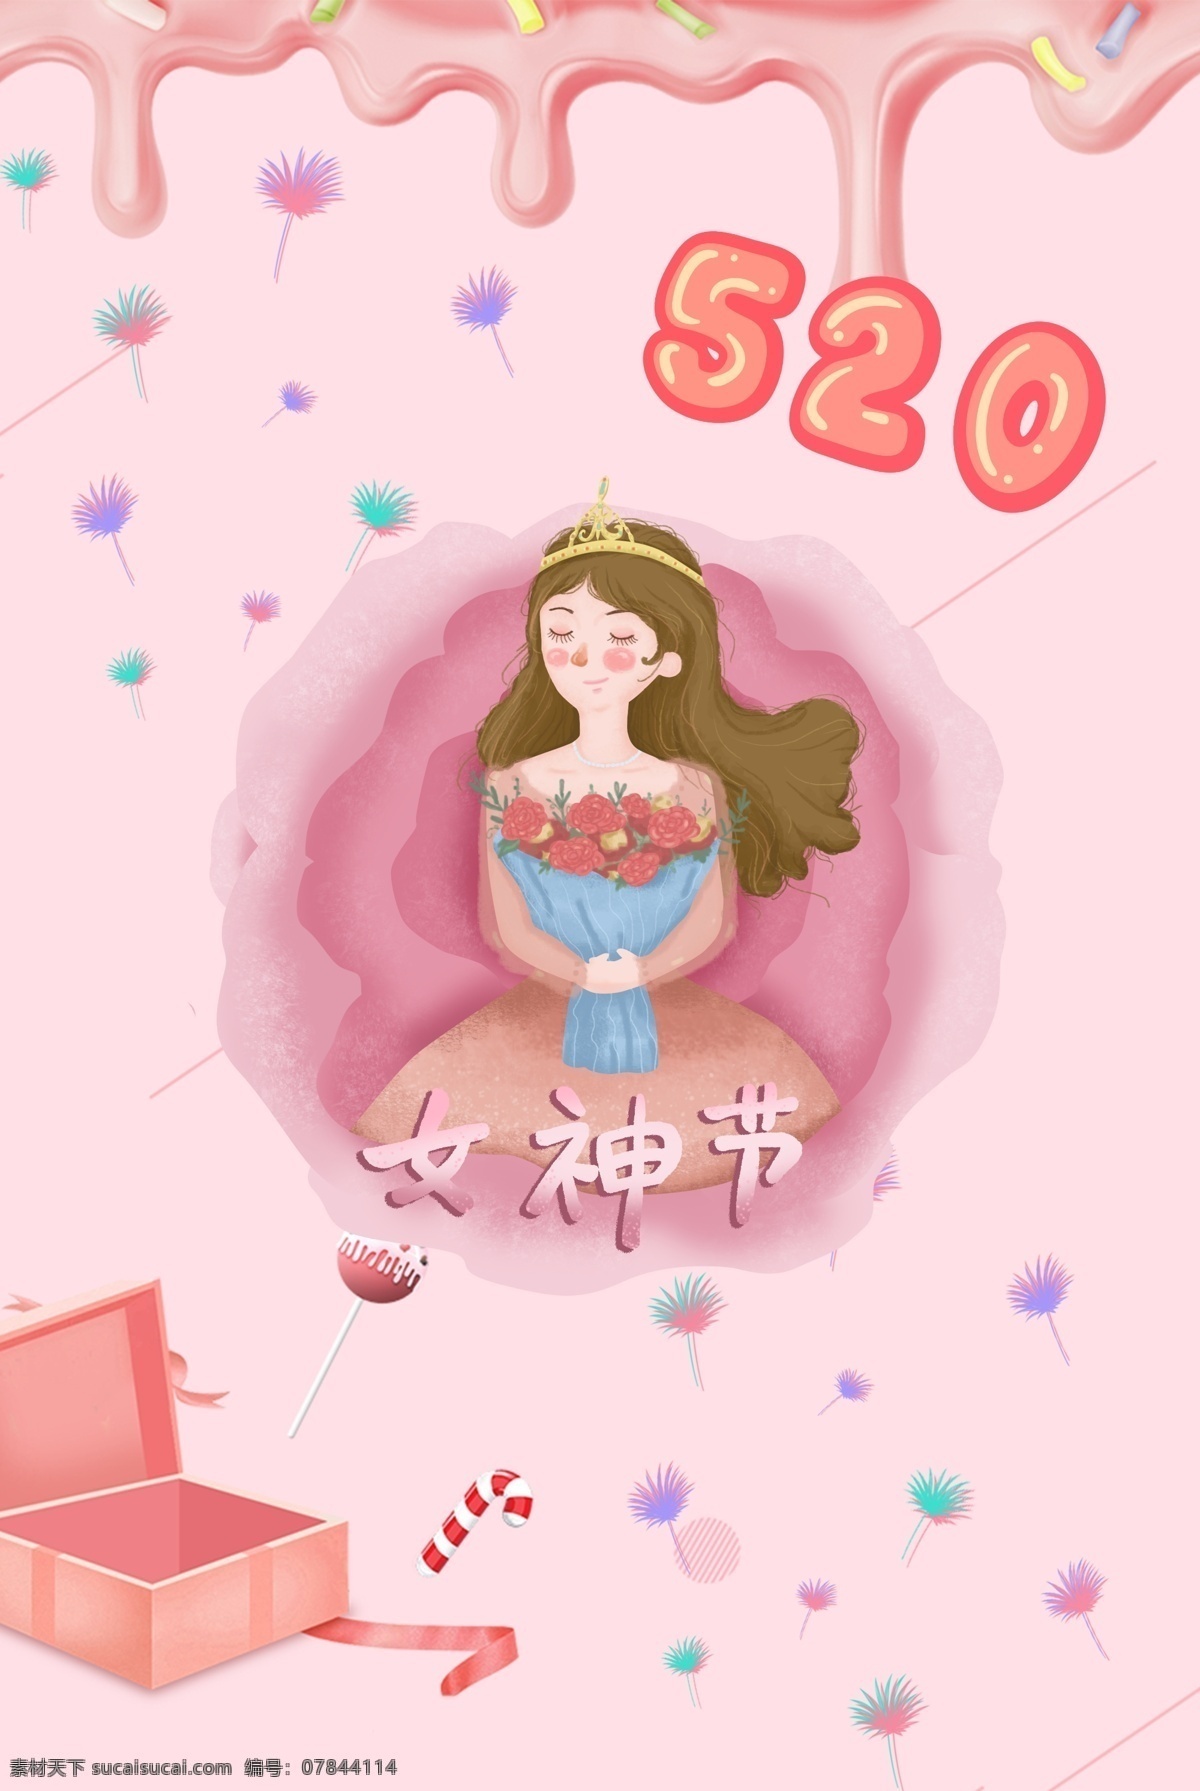 d 糖果 少女 节 海报 背景 图 2.5d 少女节 可爱 520 女王 梦幻 甜蜜